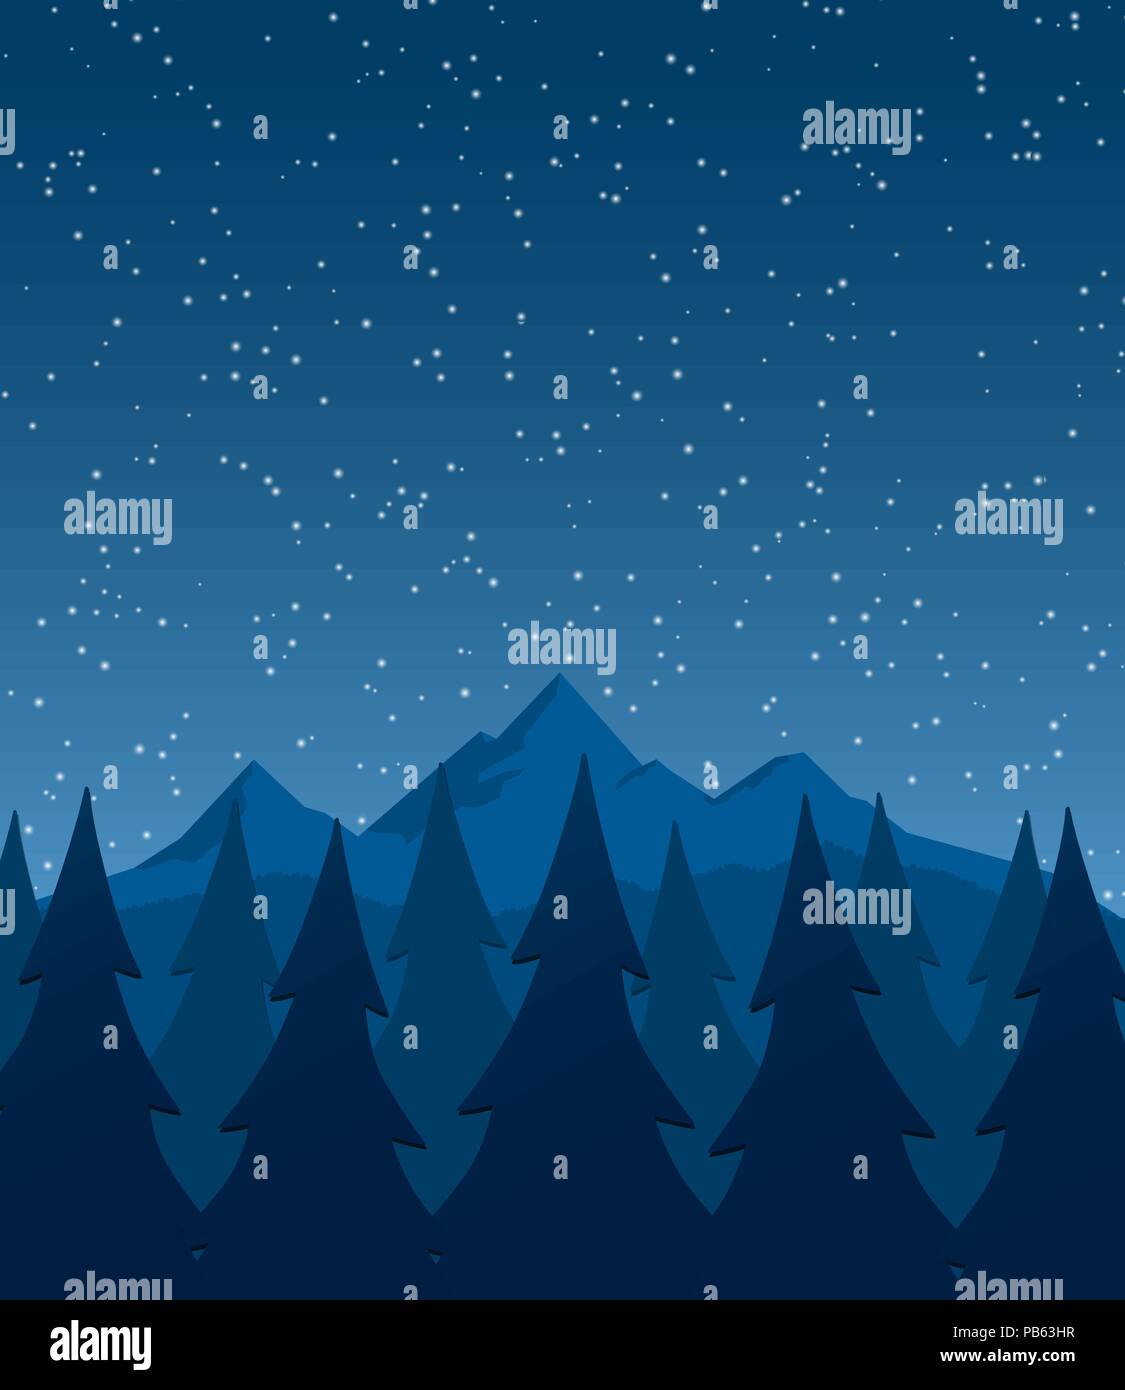 Landschaft mit Bergen, Bäumen und starful Nachthimmel - Hintergrund - Flaches Design Stock Vektor